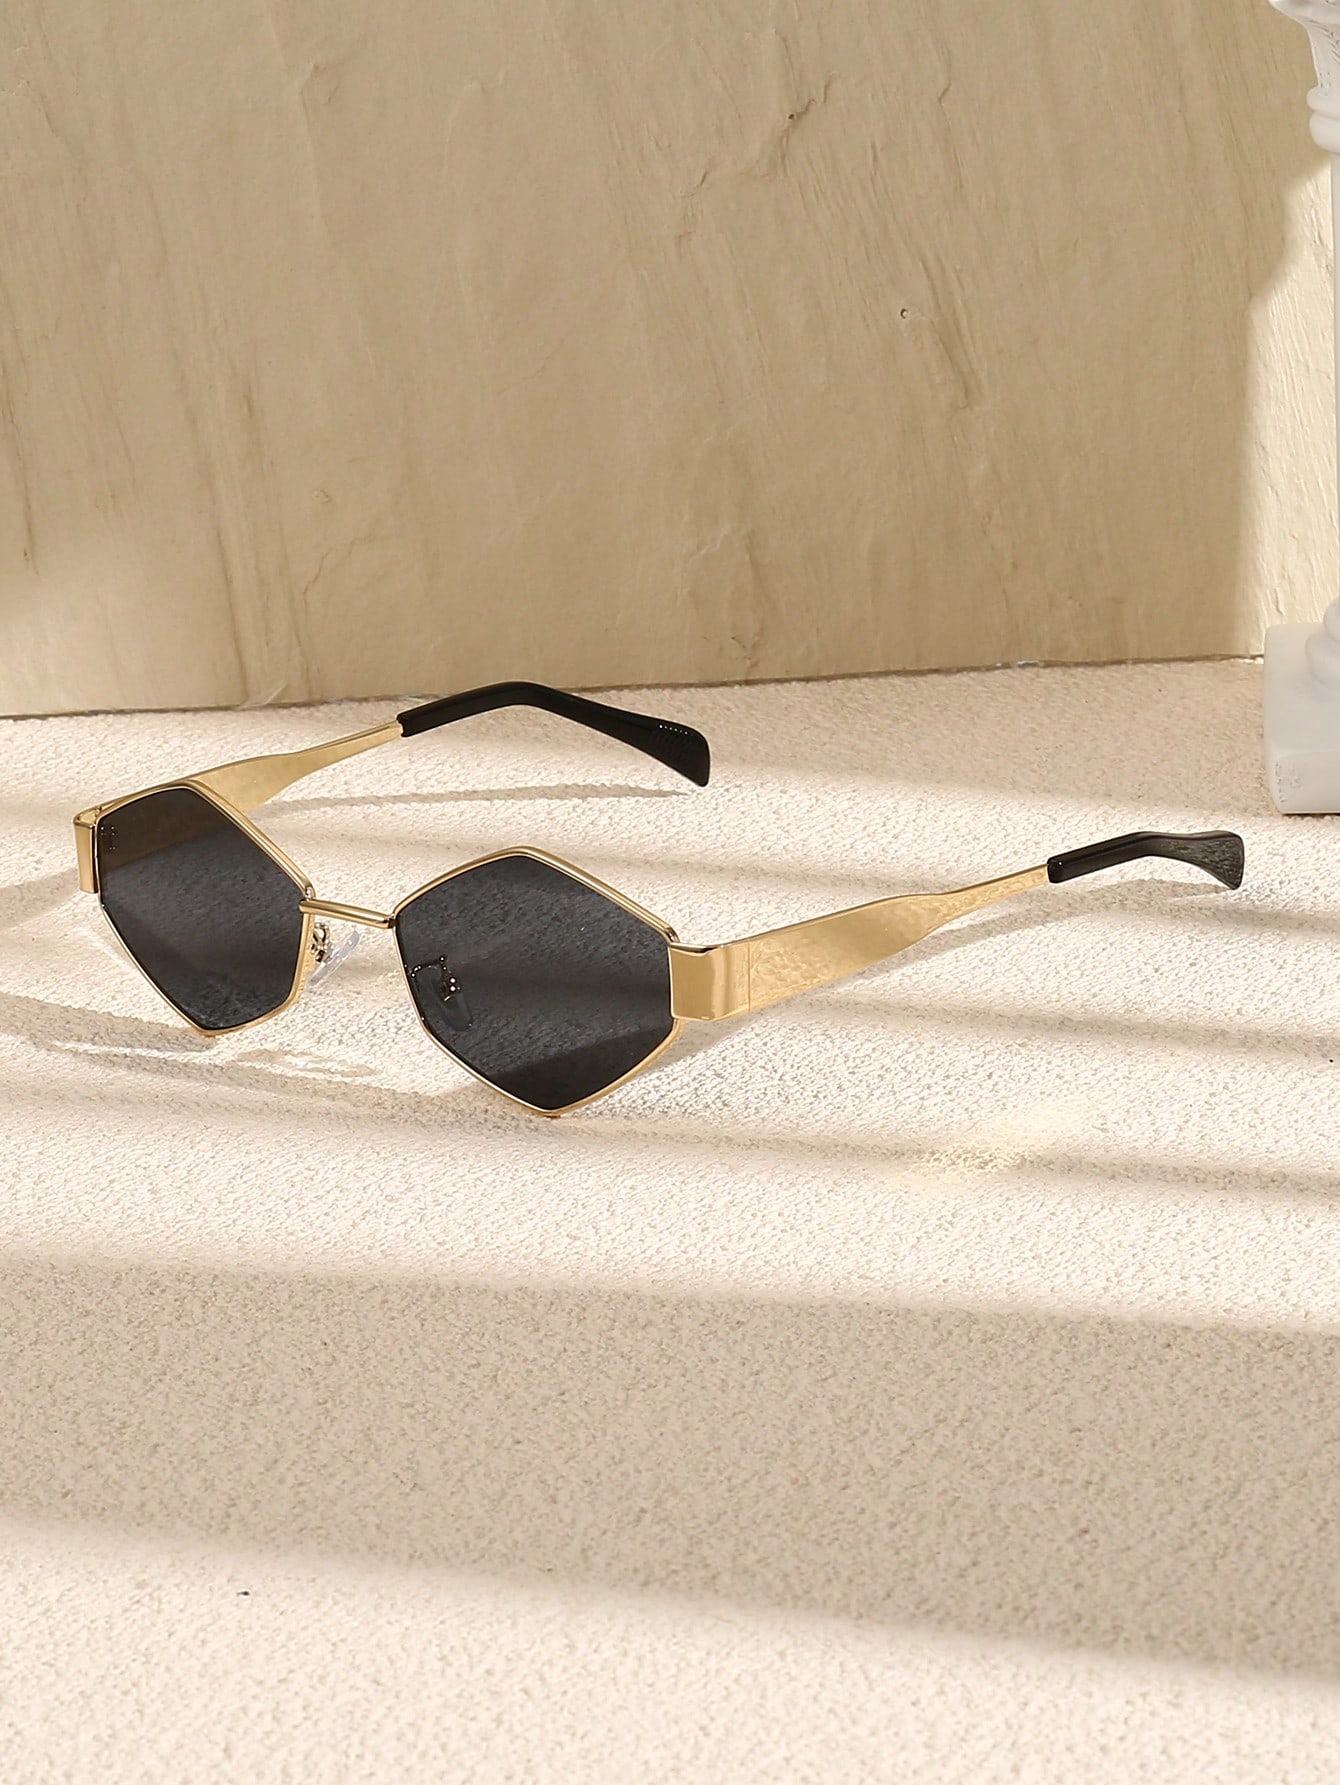 1 шт. женские солнцезащитные очки в уличном стиле в стиле ретро 70-х годов в маленькой оправе геометрической формы